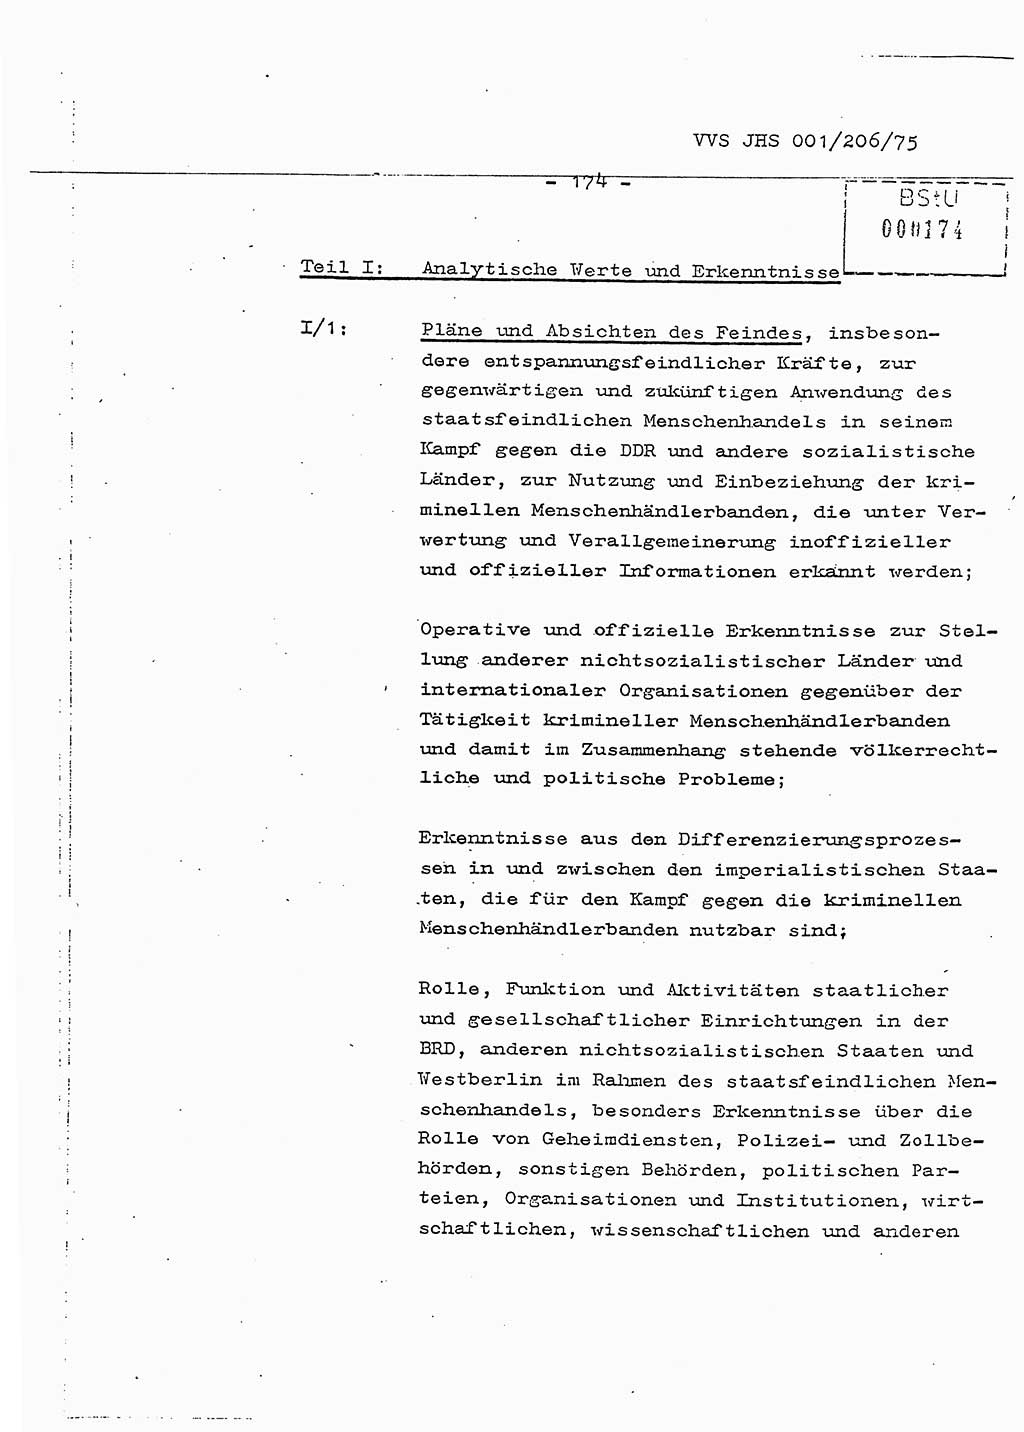 Dissertation Generalmajor Manfred Hummitzsch (Leiter der BV Leipzig), Generalmajor Heinz Fiedler (HA Ⅵ), Oberst Rolf Fister (HA Ⅸ), Ministerium für Staatssicherheit (MfS) [Deutsche Demokratische Republik (DDR)], Juristische Hochschule (JHS), Vertrauliche Verschlußsache (VVS) 001-206/75, Potsdam 1975, Seite 174 (Diss. MfS DDR JHS VVS 001-206/75 1975, S. 174)